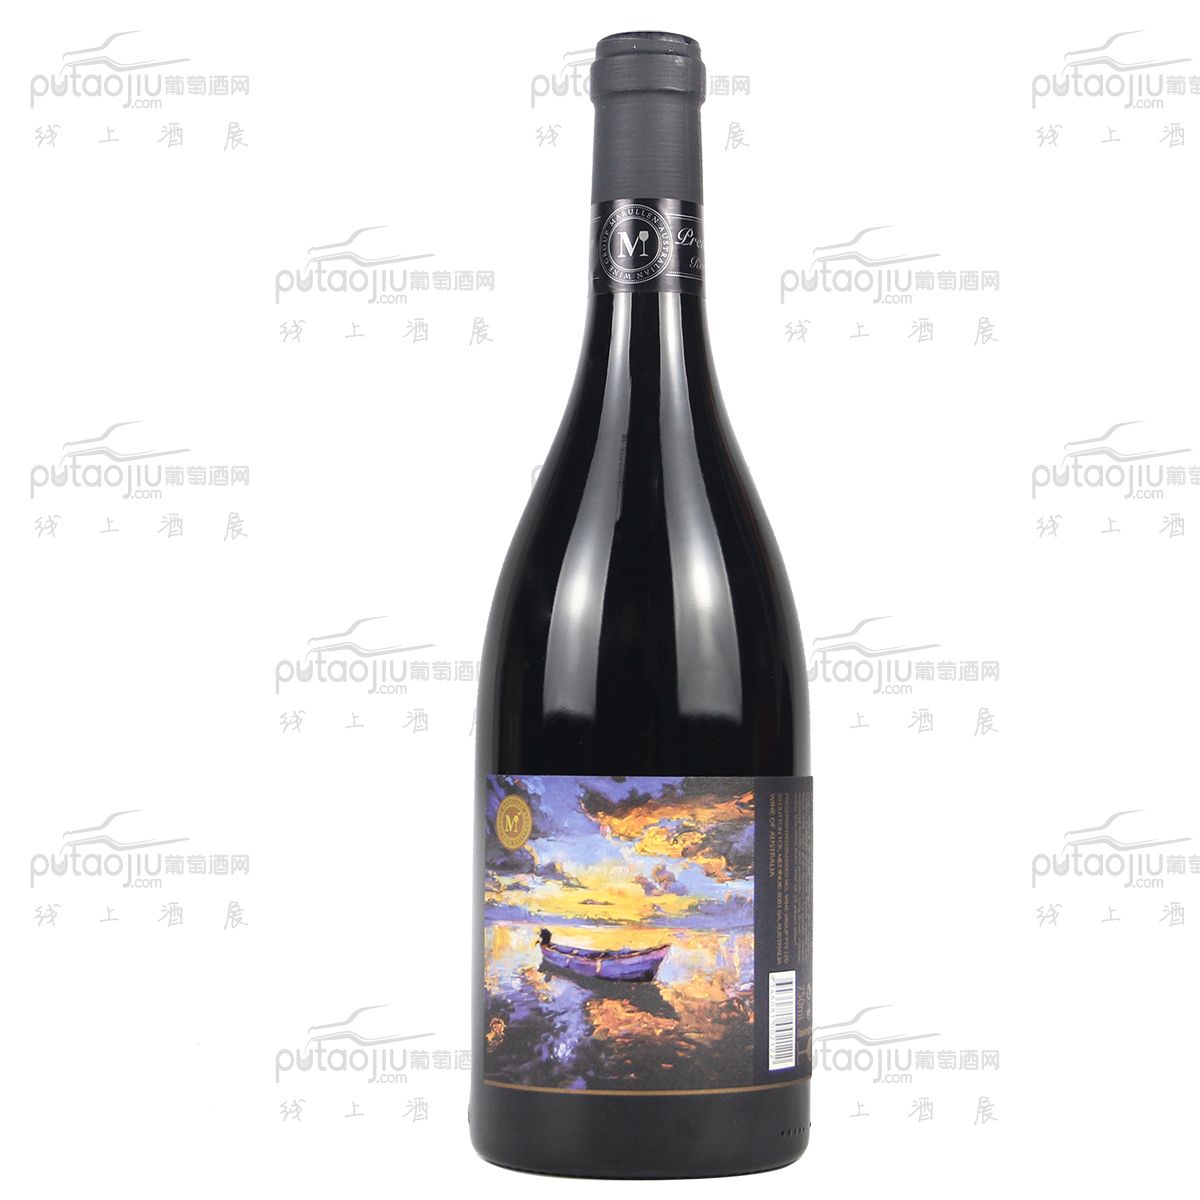 澳大利亚麦克拉伦谷产区盛宴酒庄萬瑞涞赤霞珠印象. 融和干红葡萄酒红酒